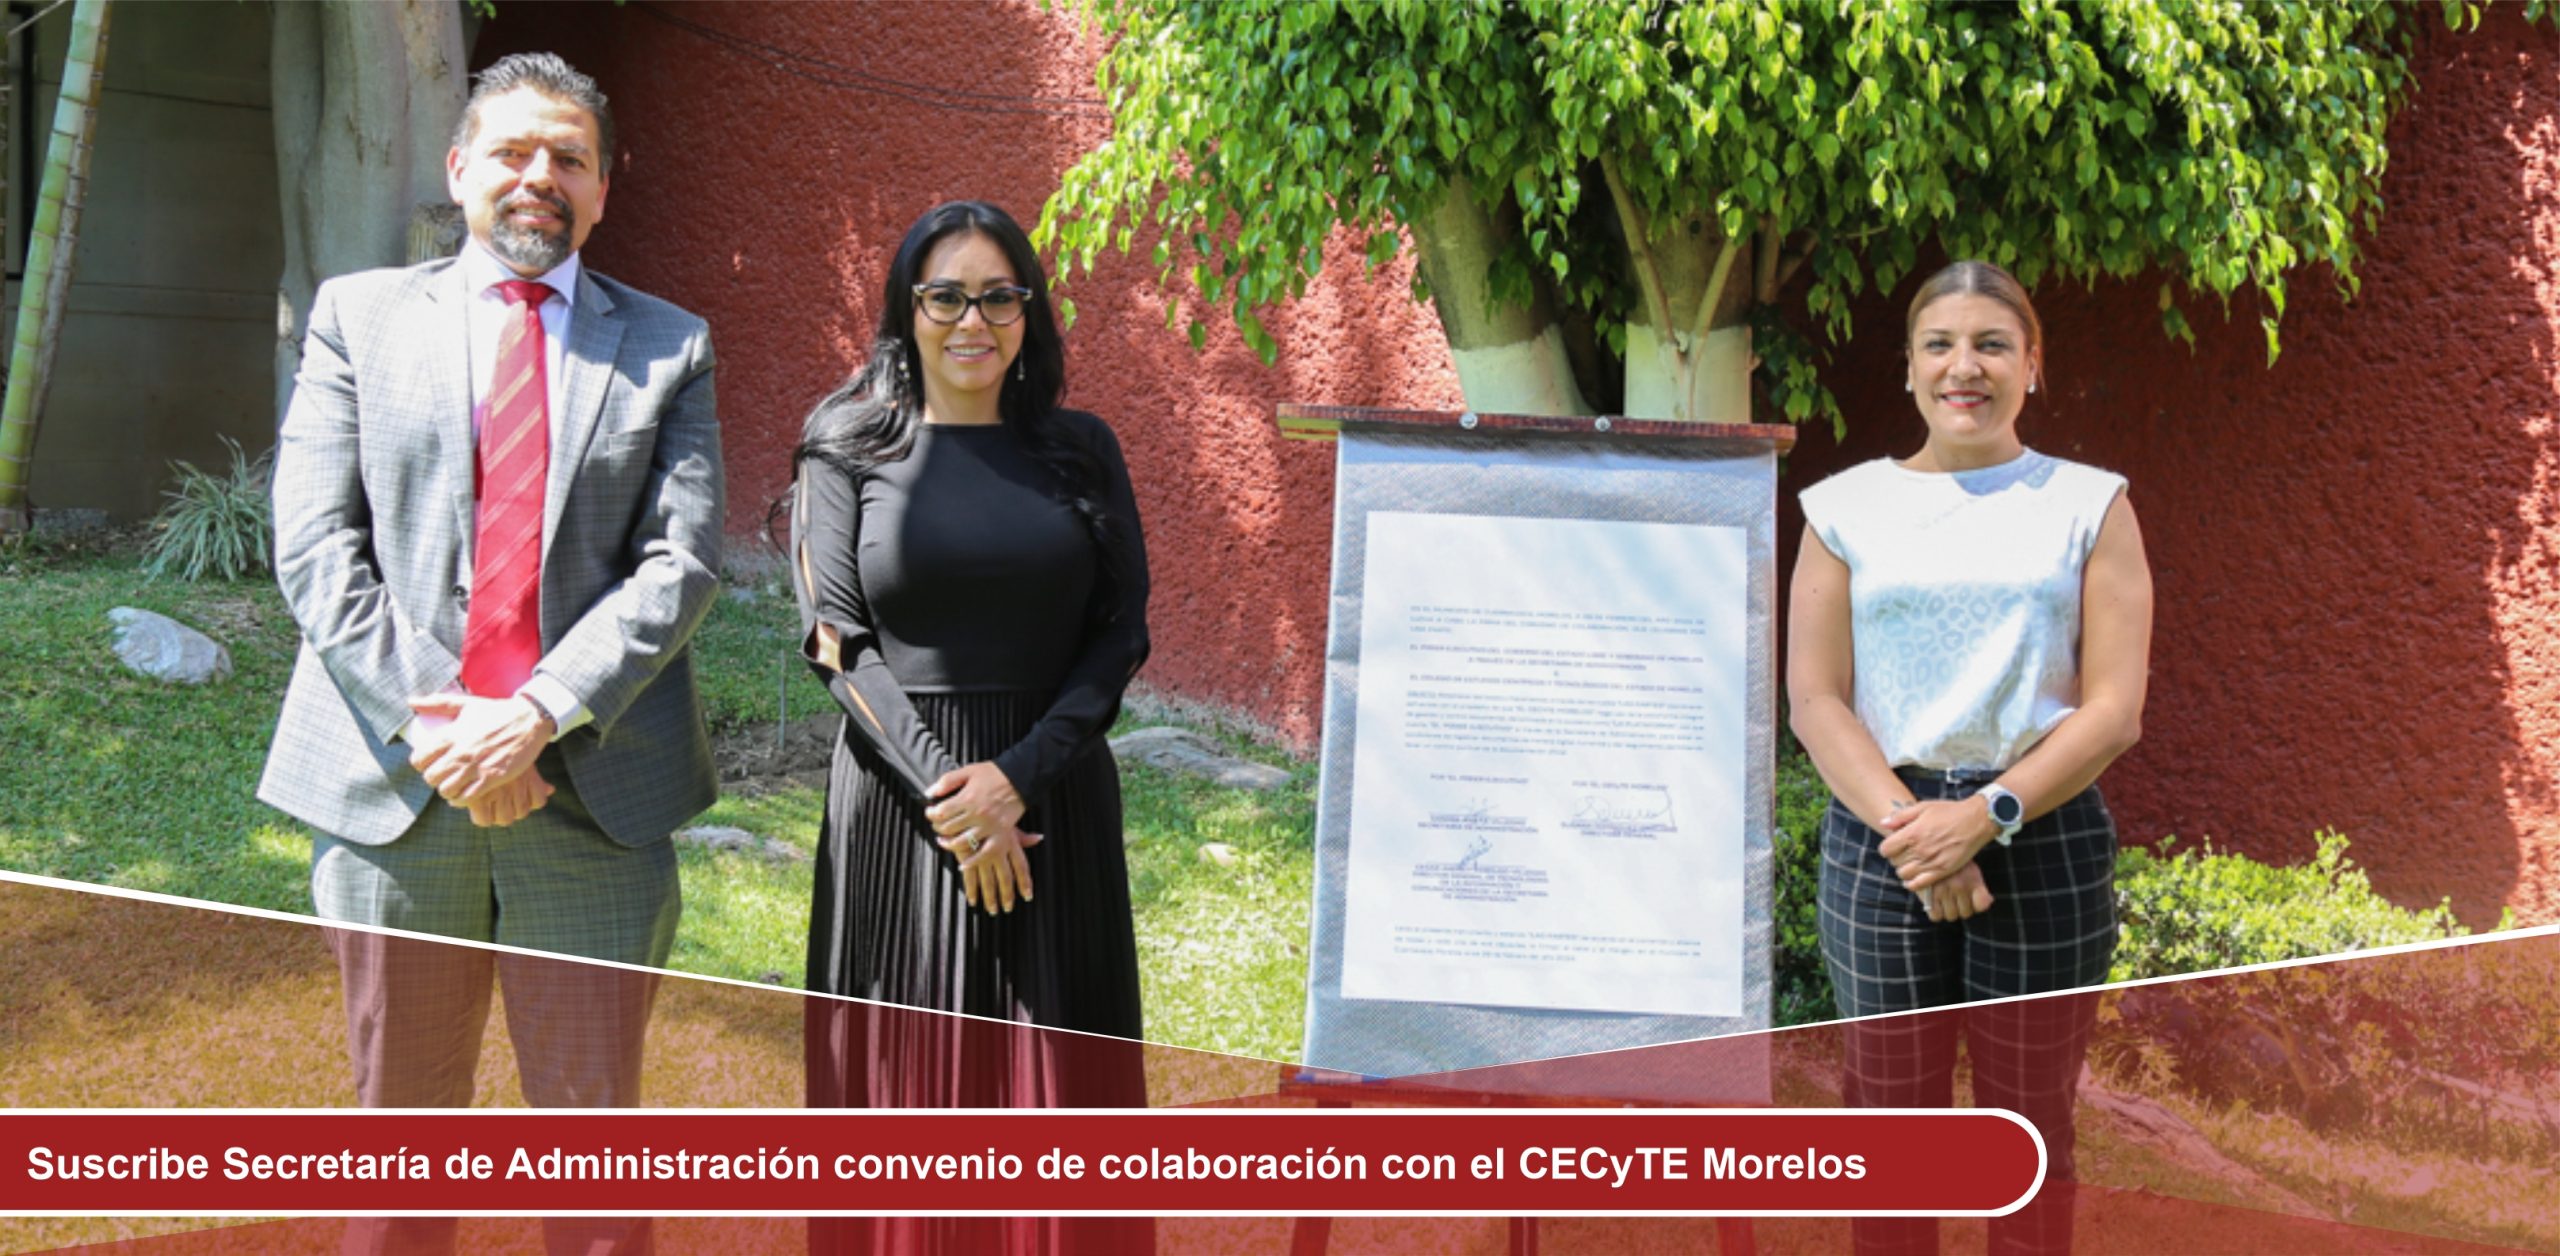 Suscribe Secretaría de Administración convenio de colaboración con el CECyTE Morelos